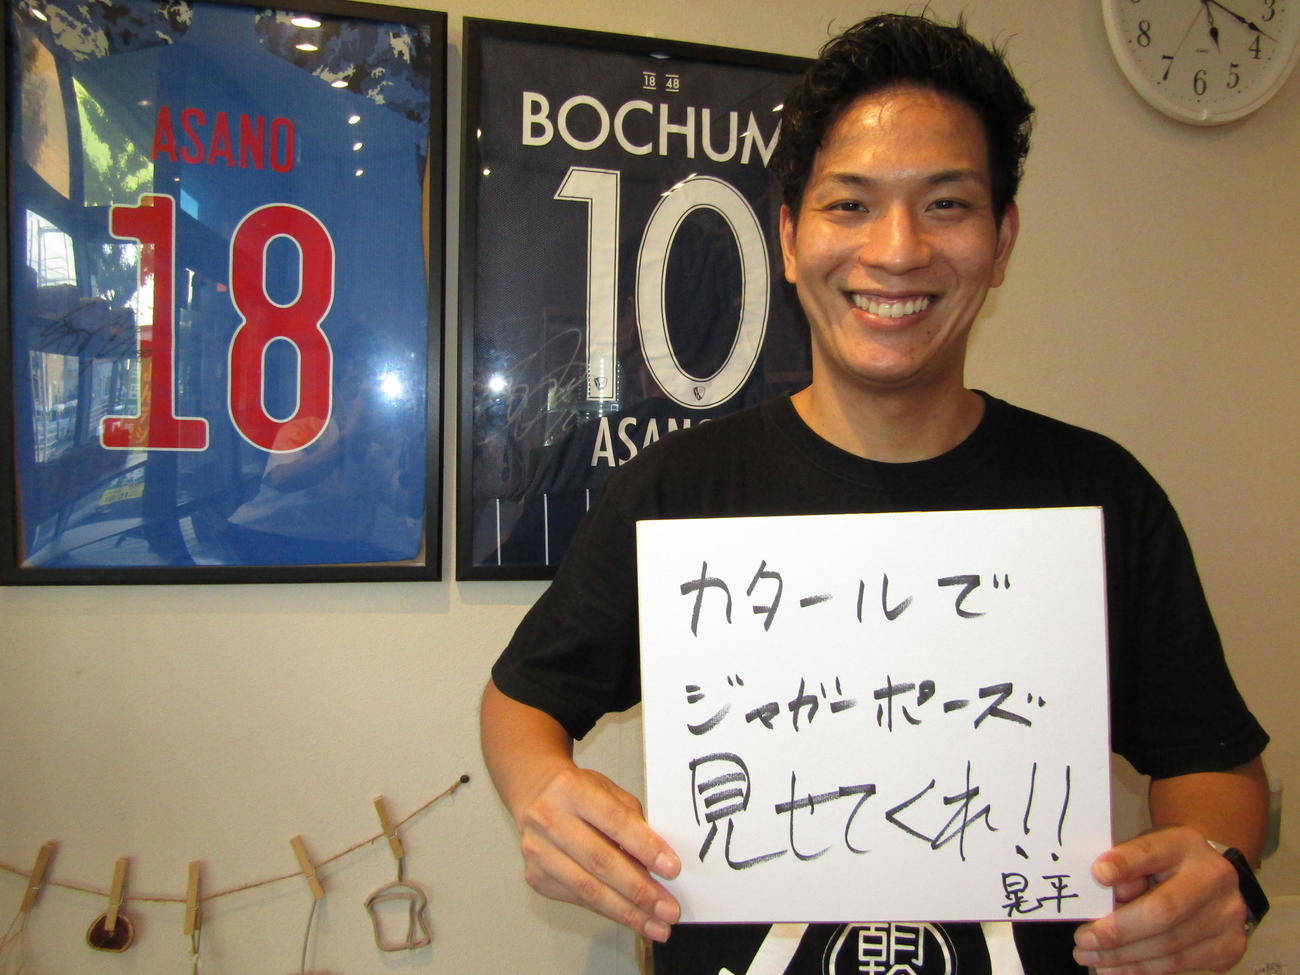 浅野拓磨が経営する食パン店「朝のらしさ」の店長は兄晃平さん。店内で弟へのメッセージを記す